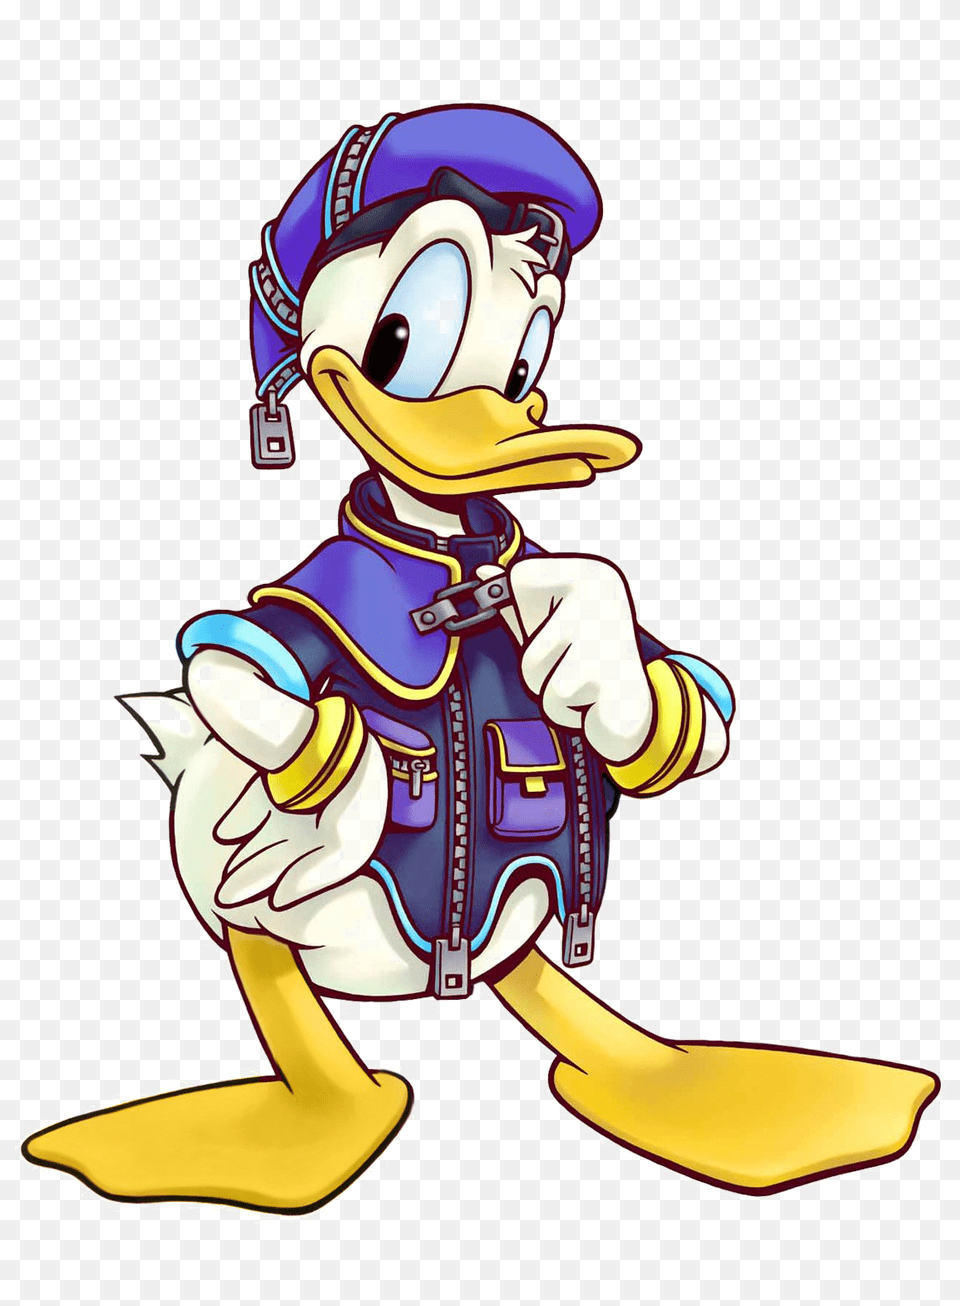 Donald Duck Transparent Kingdom Hearts 2 Donald, Book, Comics, Publication, Baby Png